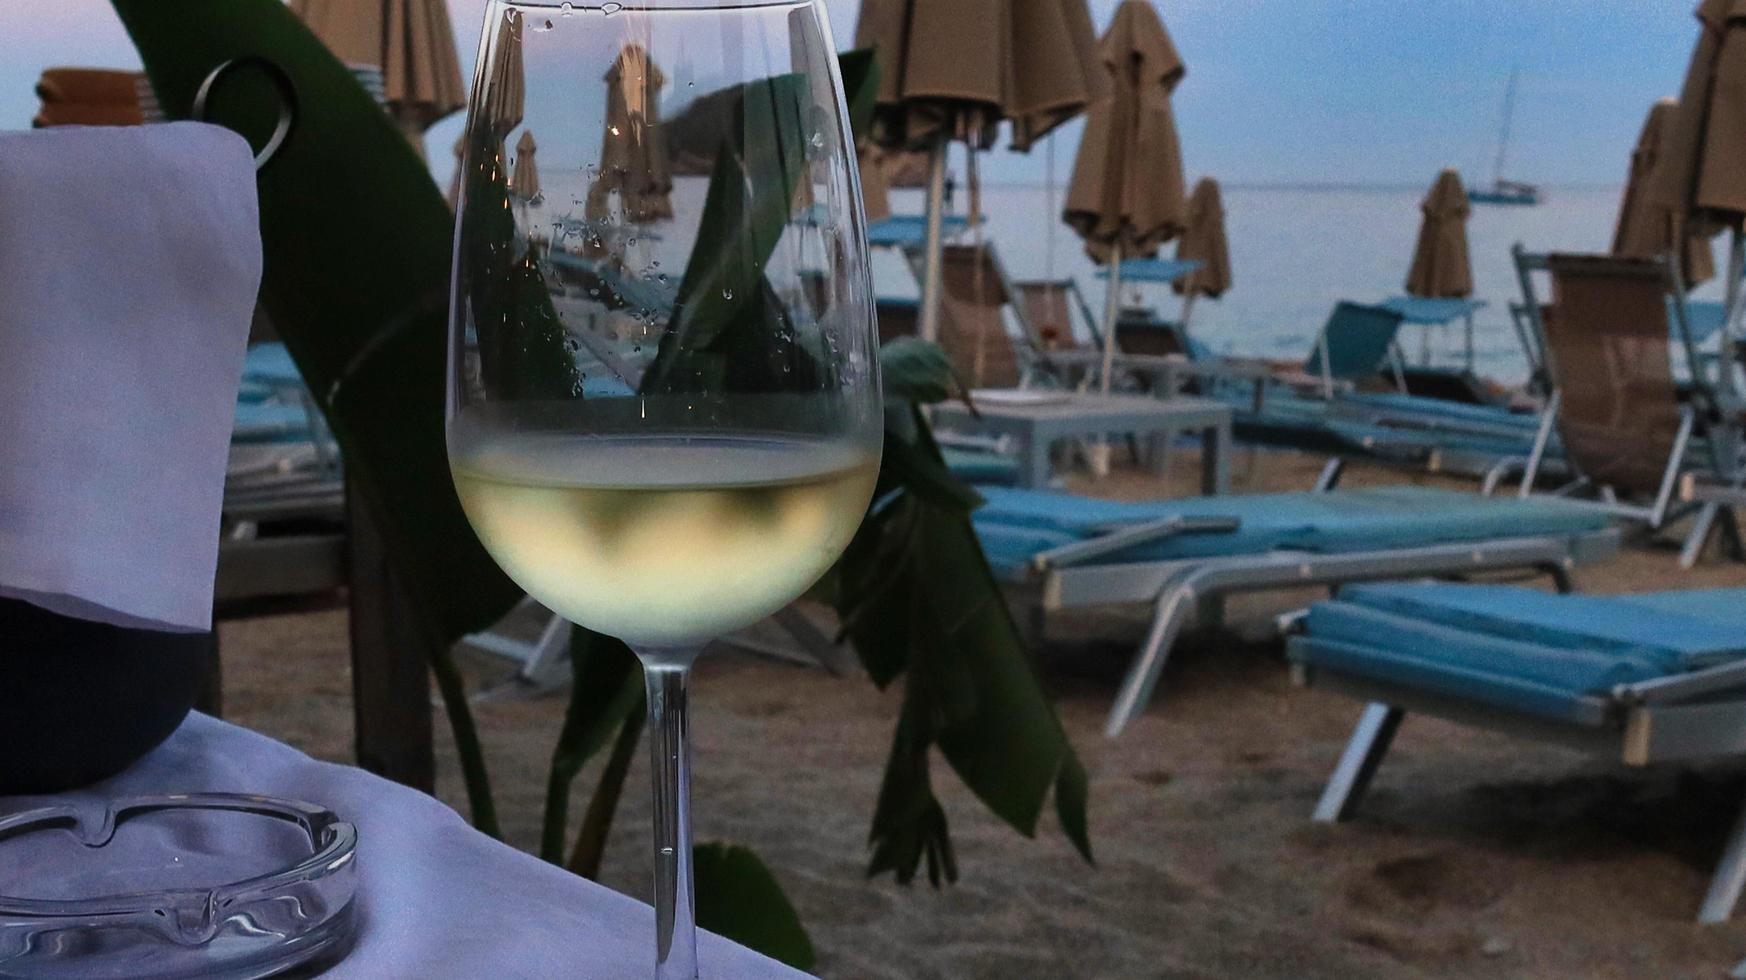 un verre de vin blanc frais dans un restaurant en bord de mer durant l'été 2022 photo